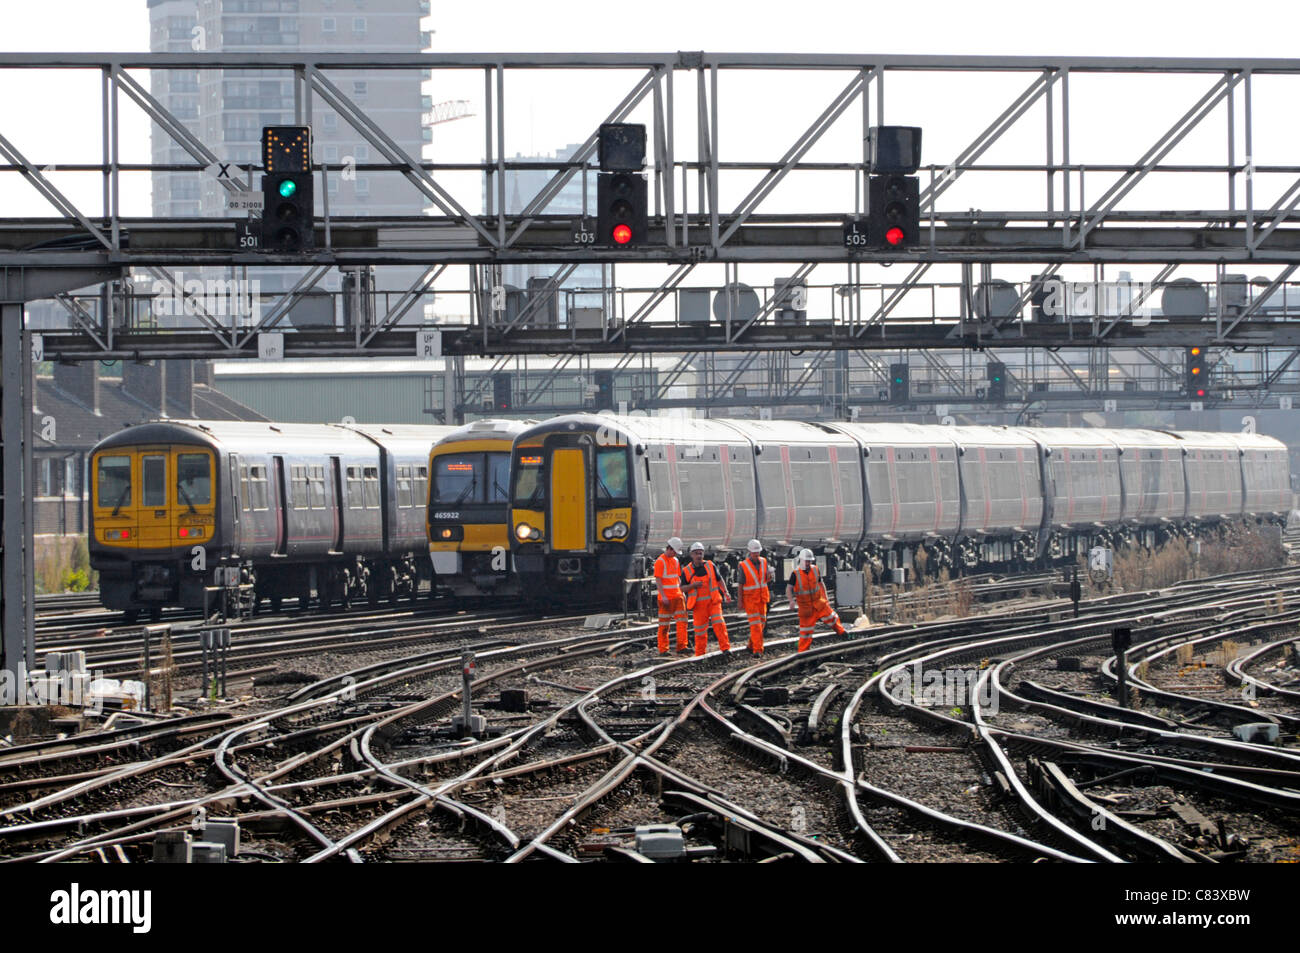 Gruppe von Eisenbahnern auf elektrifizierten Strecke mit Zügen ankommenden und abfliegenden London Bridge Bahnhof Stockfoto